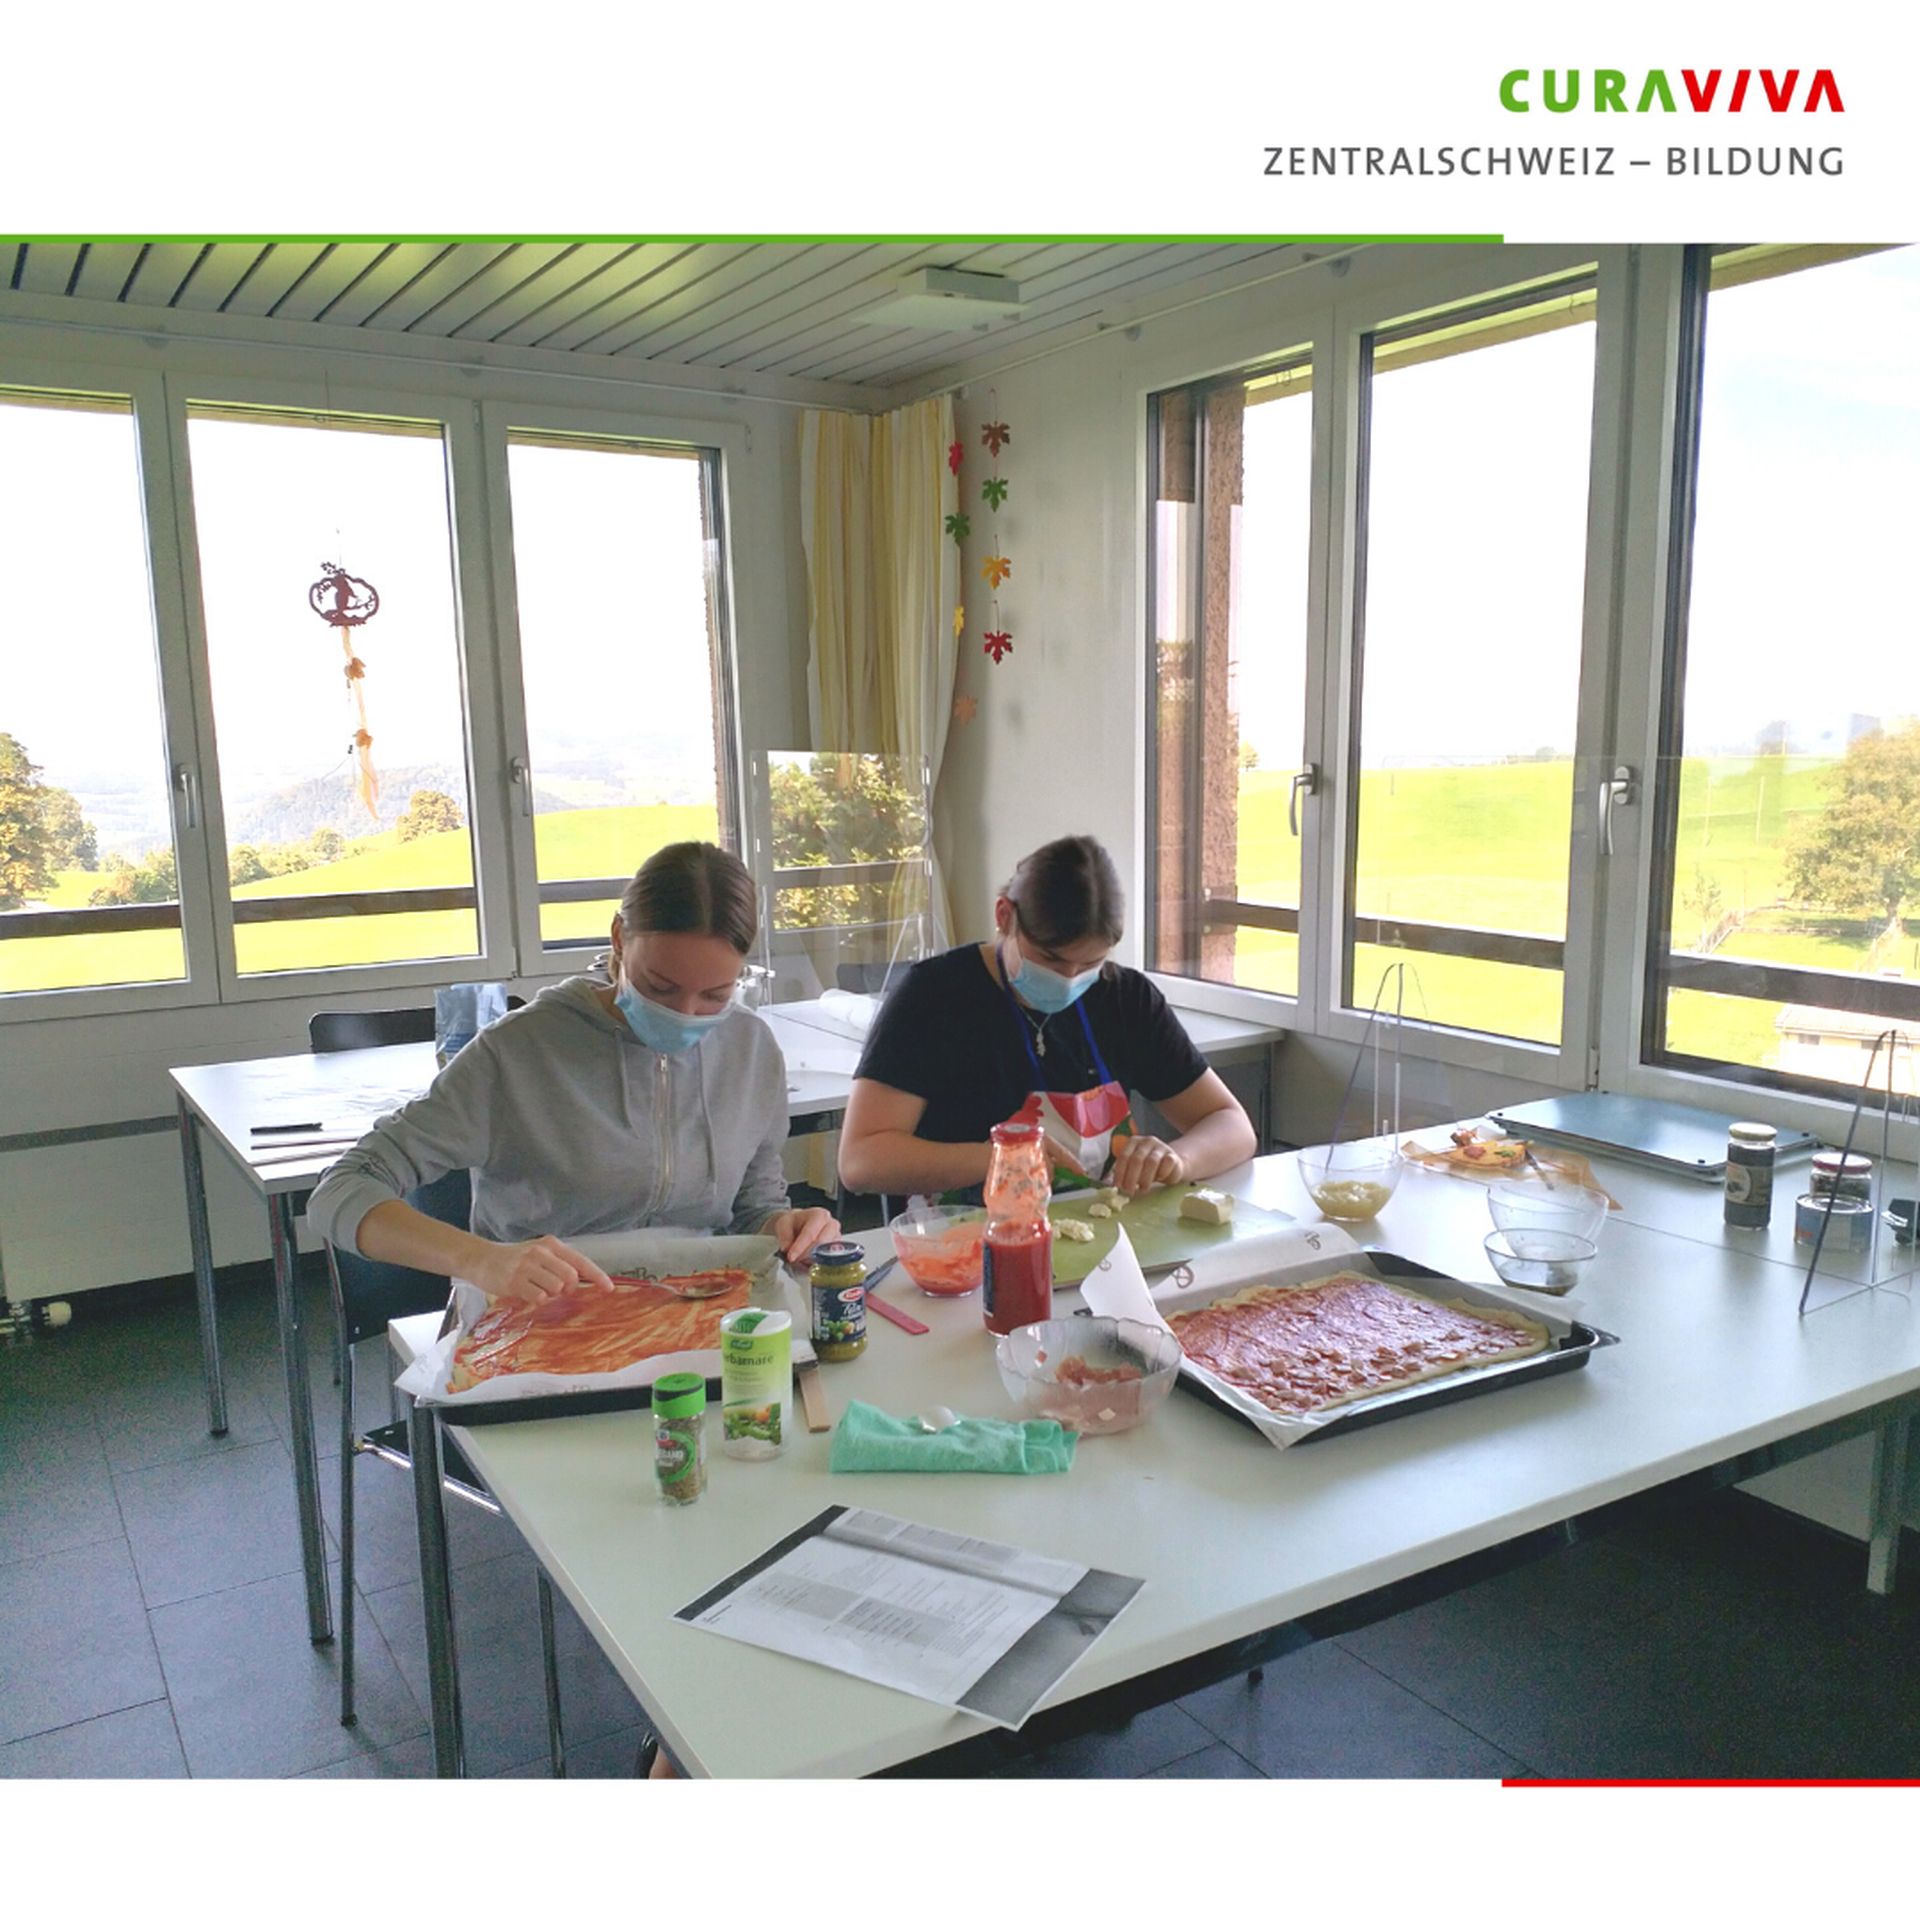 CURAVIVA Zentralschweiz – Bildung | Überbetriebllicher Kurs | Behind the scenes